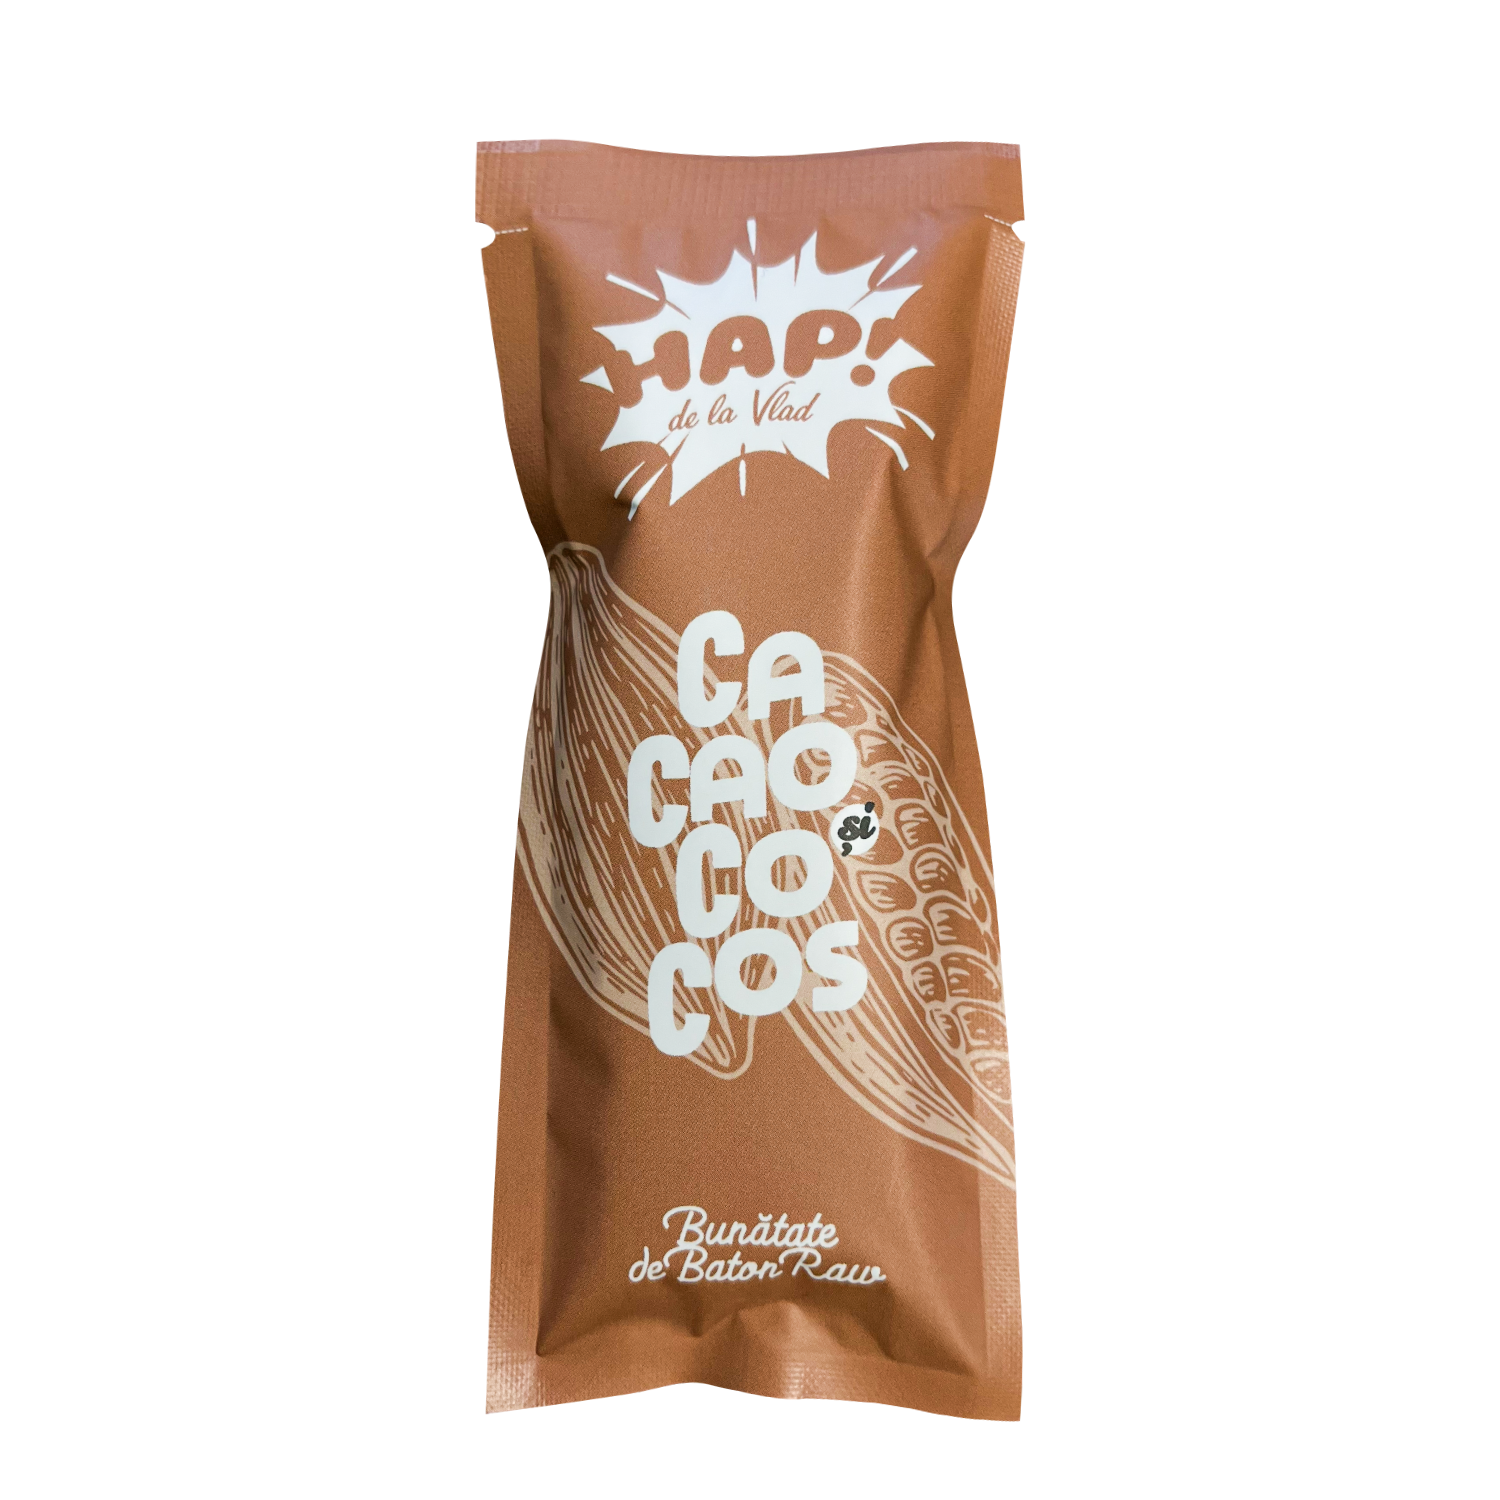 Baton raw vegan cu cacao si cocos, 45 g, Hap de la Vlad